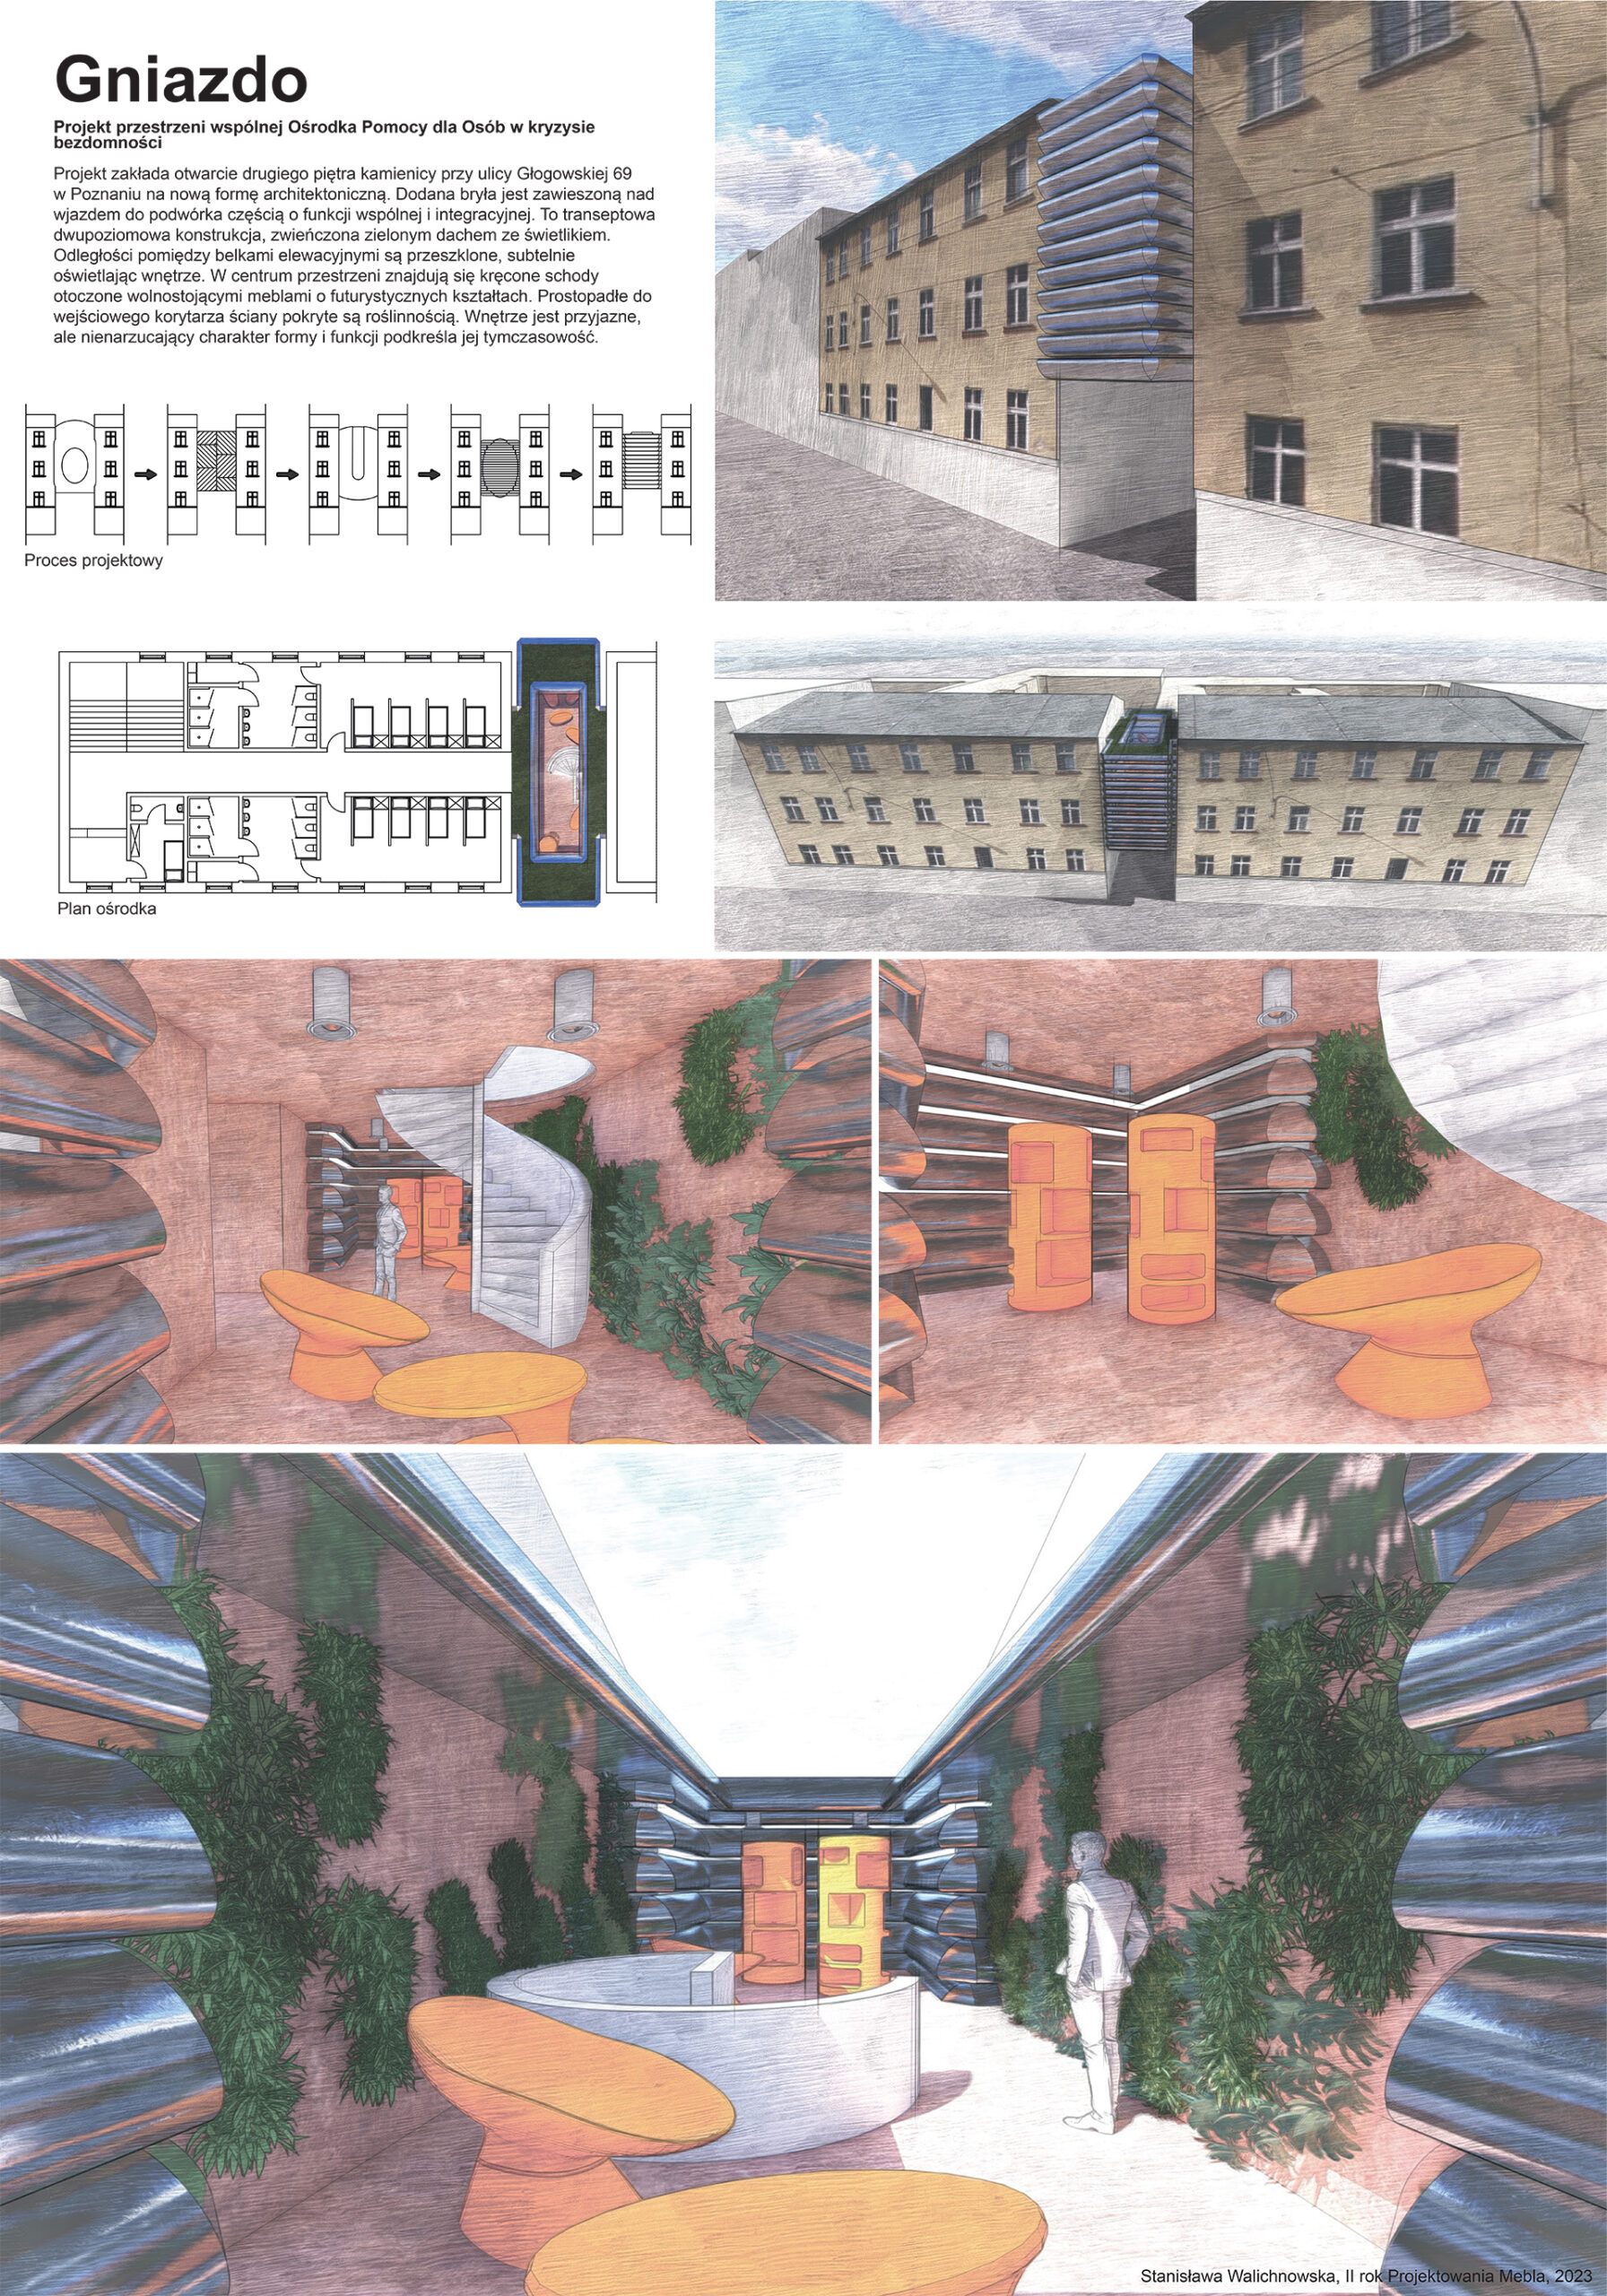 Plansza prezentująca od lewej opis z rysunkami przedstawiającymi analizy projektowanej bryły, rzut  wnętrz przestrzeni wspólnej dla Ośrodka w kryzysie bezdomności poniżej przestrzenne, kolorowe kolaże projektowanej przestrzeni wspólnej.